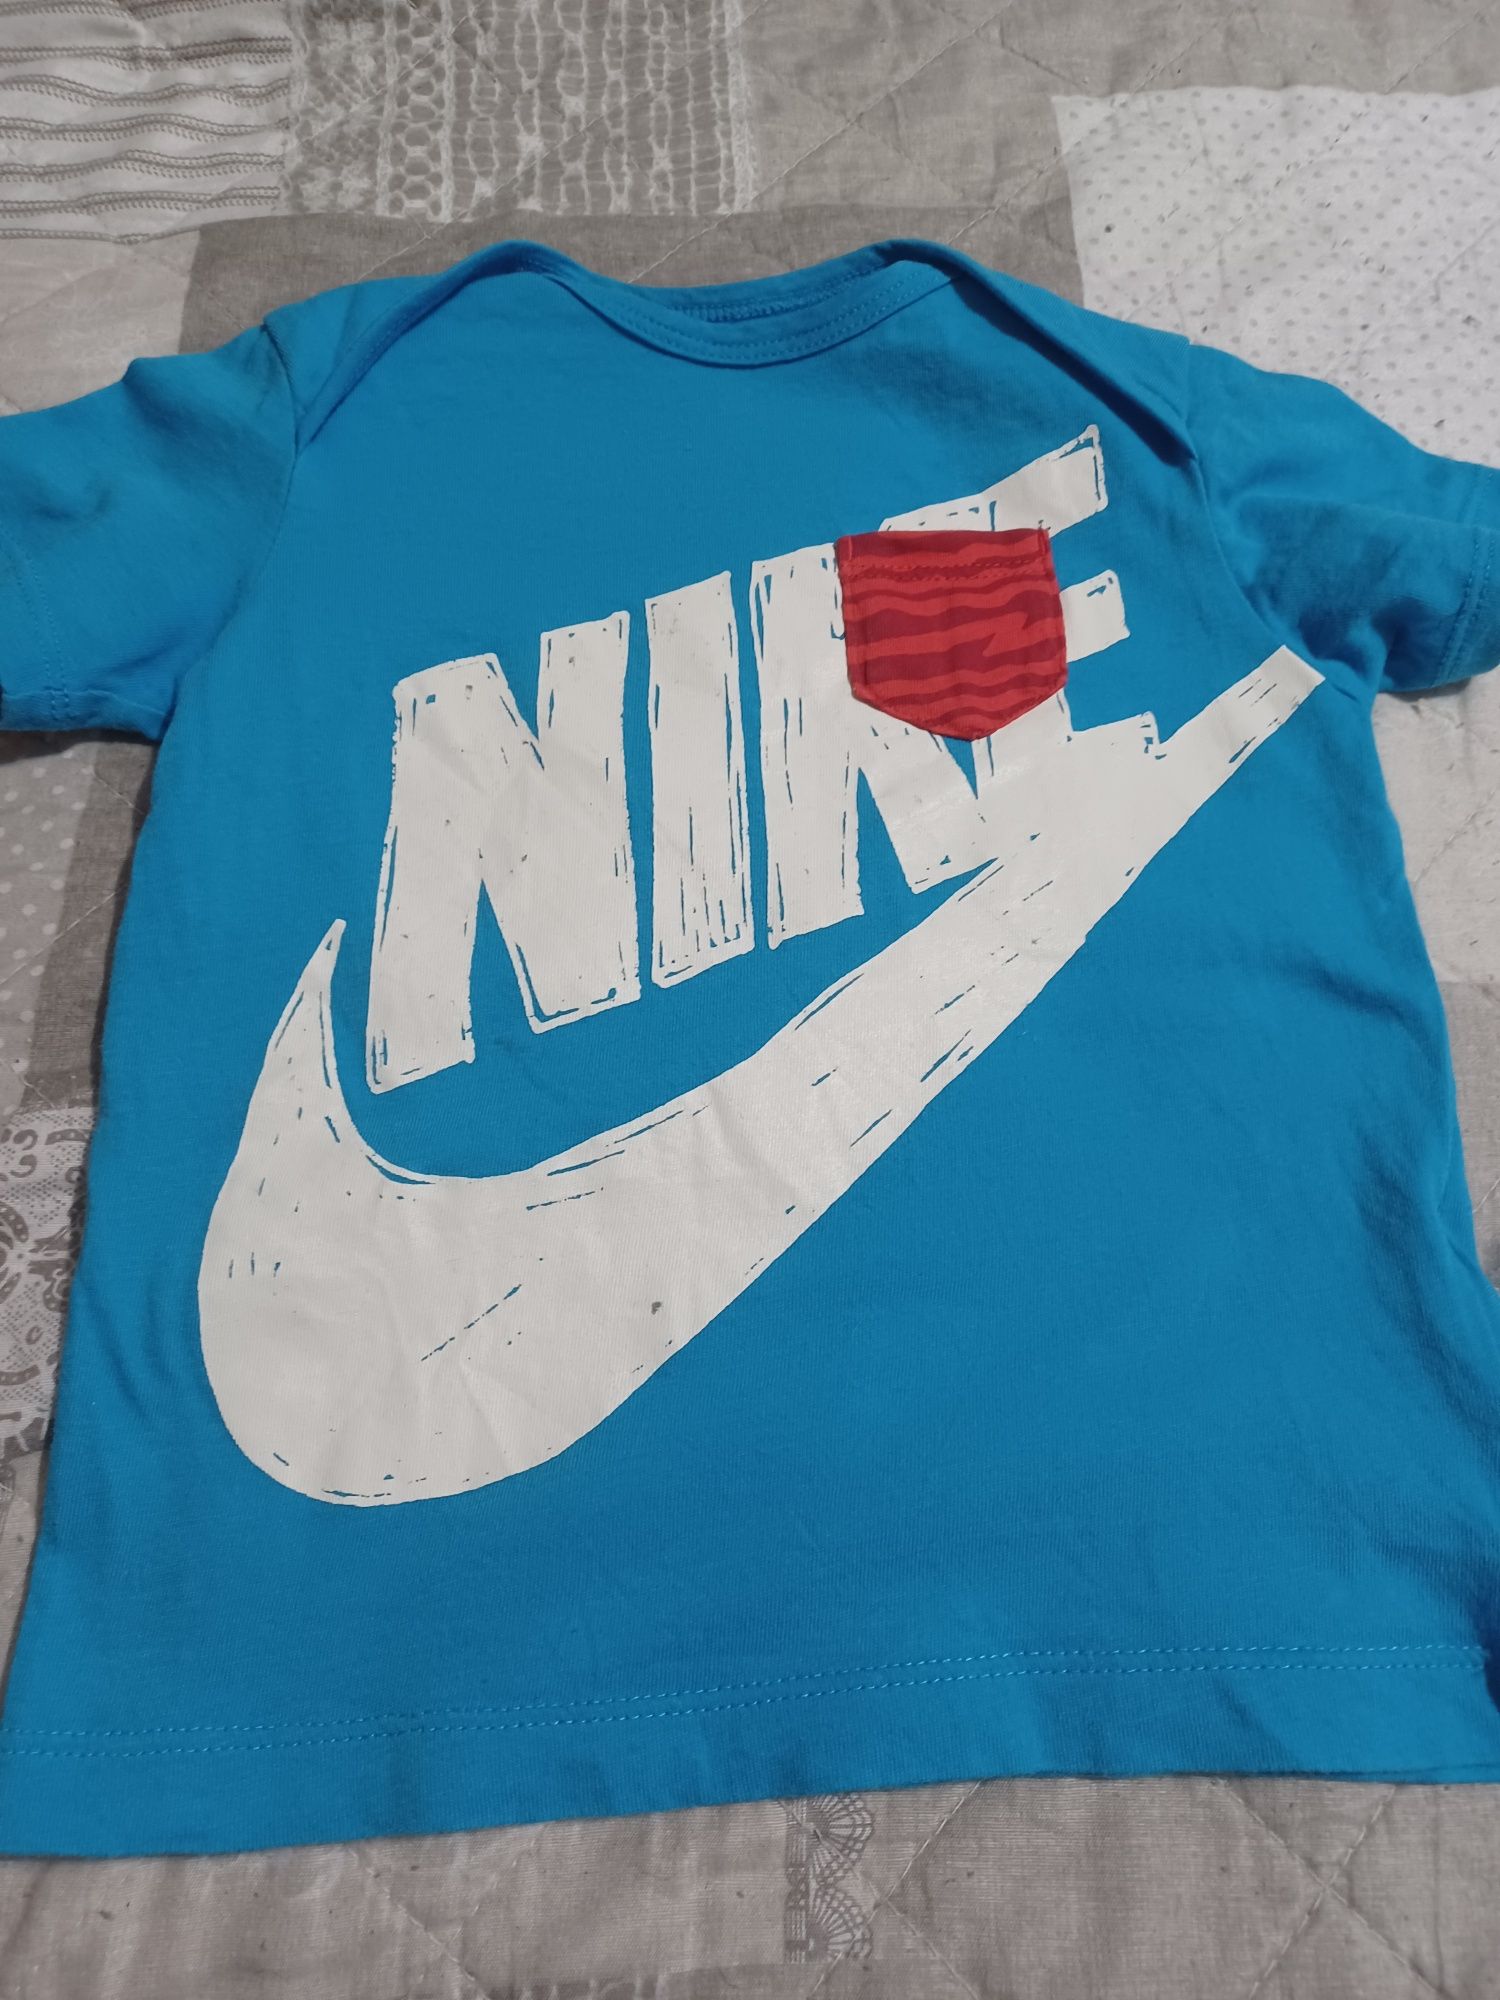 Tricou Nike original copil mărimea  80-85 între 12 -18 luni.